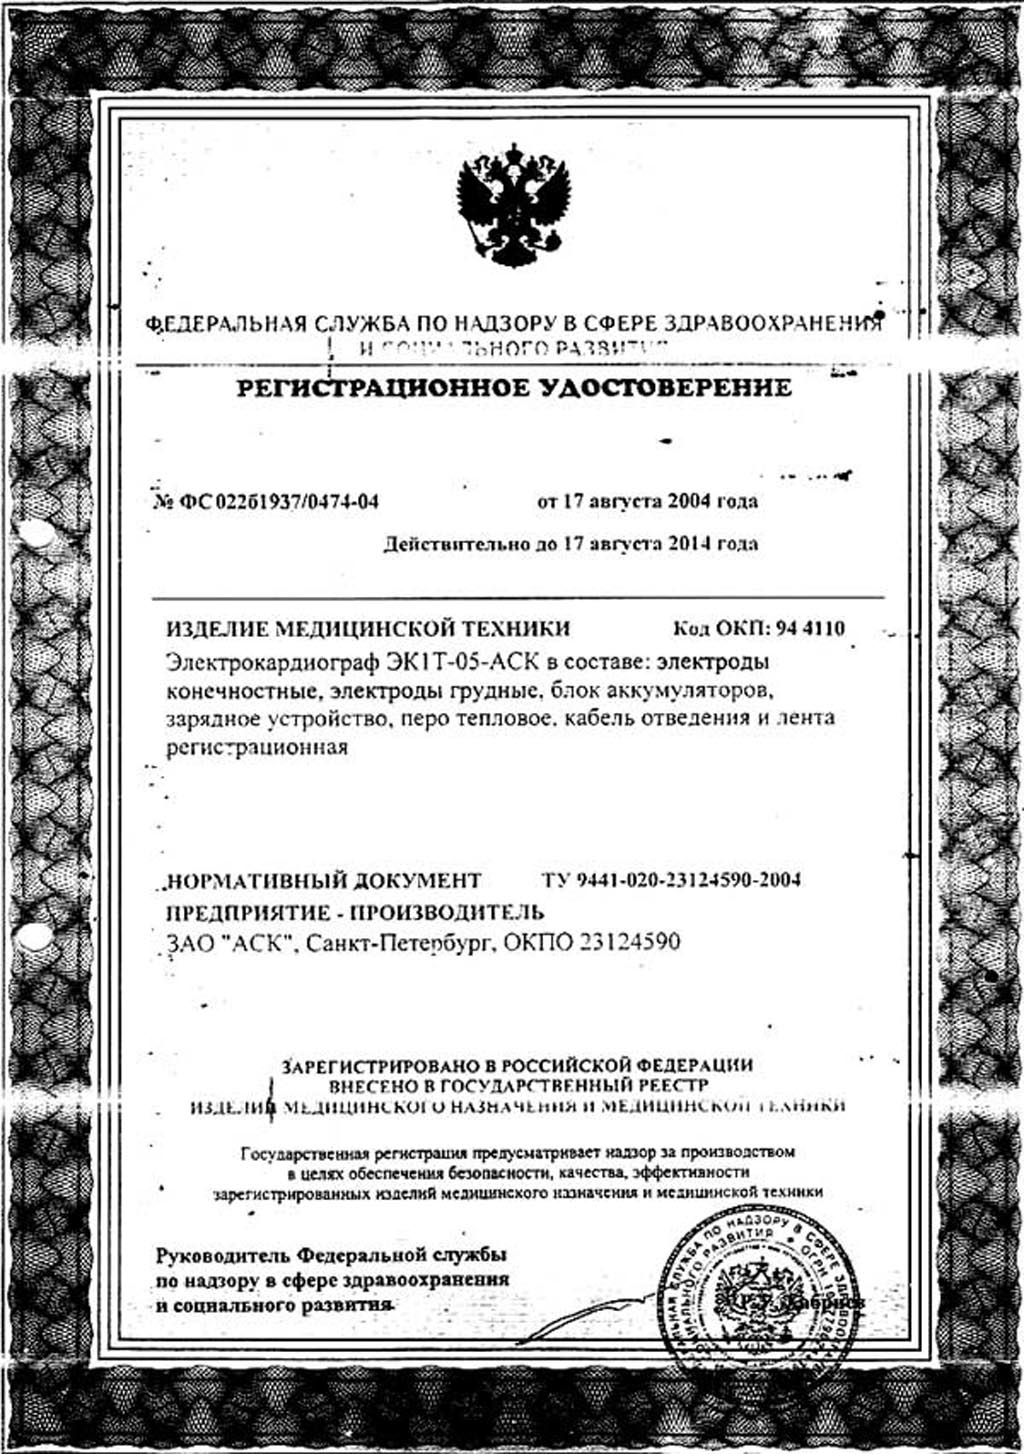 сертификат ЭК1Т-05-АСК электрокардиограф